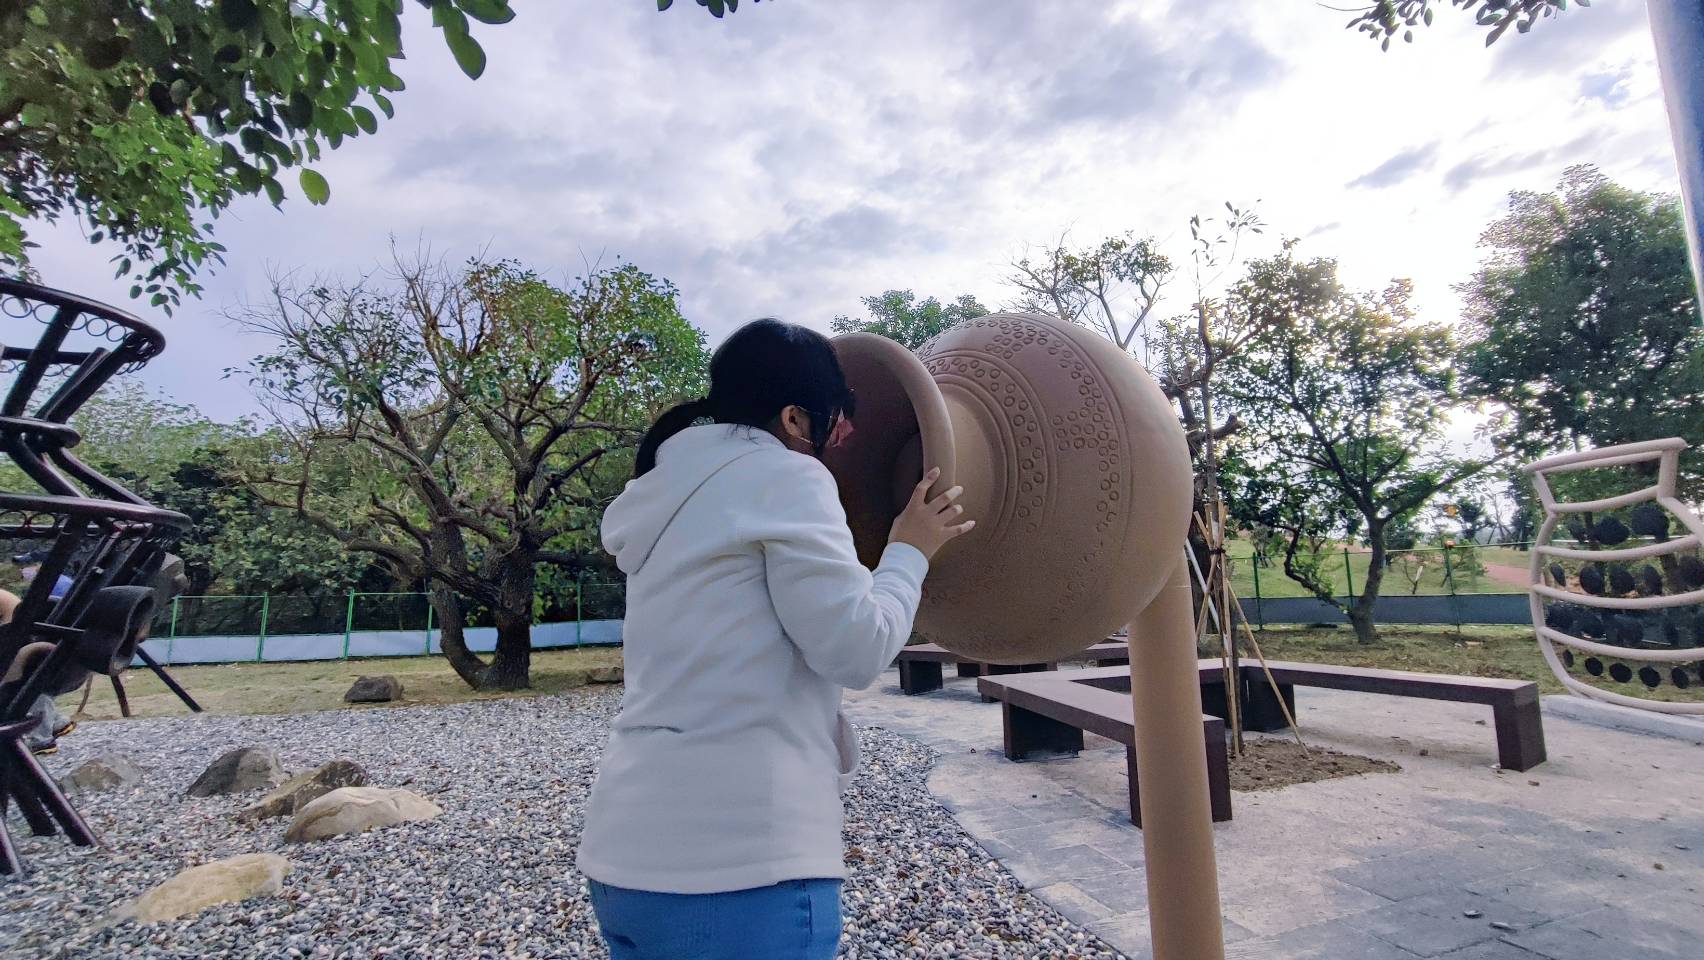 八里十三行文化公園周邊改善-陶罐造型傳聲裝置.jpg